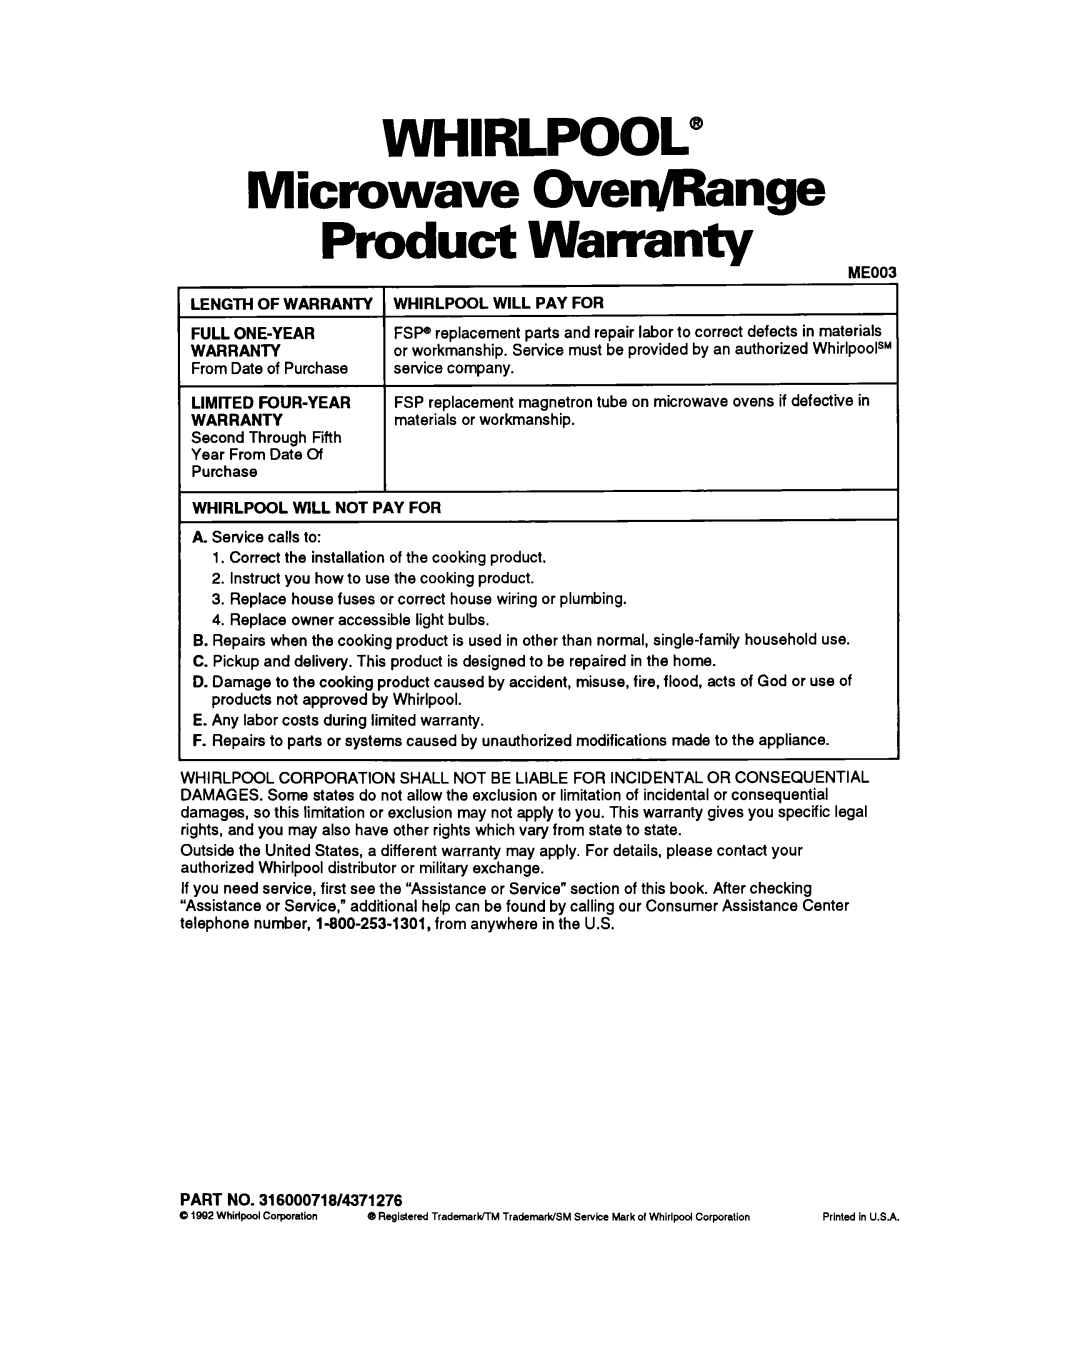 Whirlpool RM980PXY warranty Microwave OverJRange Product Warranty, Whirlpool 